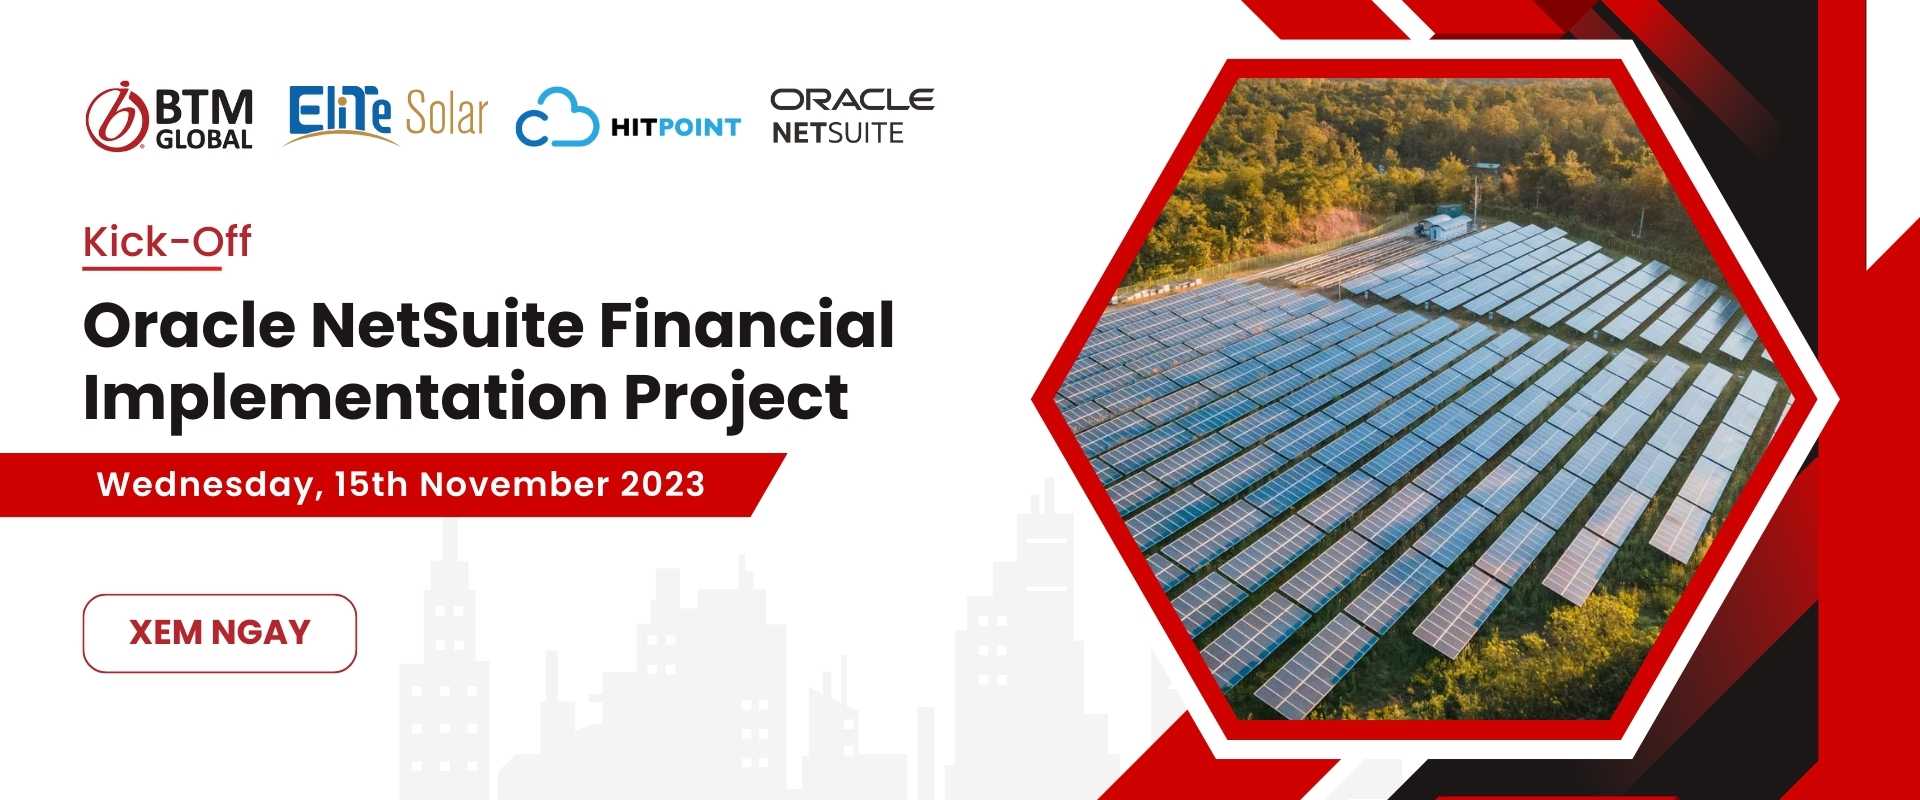 EliTe Solar và BTM Global Việt Nam khởi động dự án triển khai Oracle NetSuite